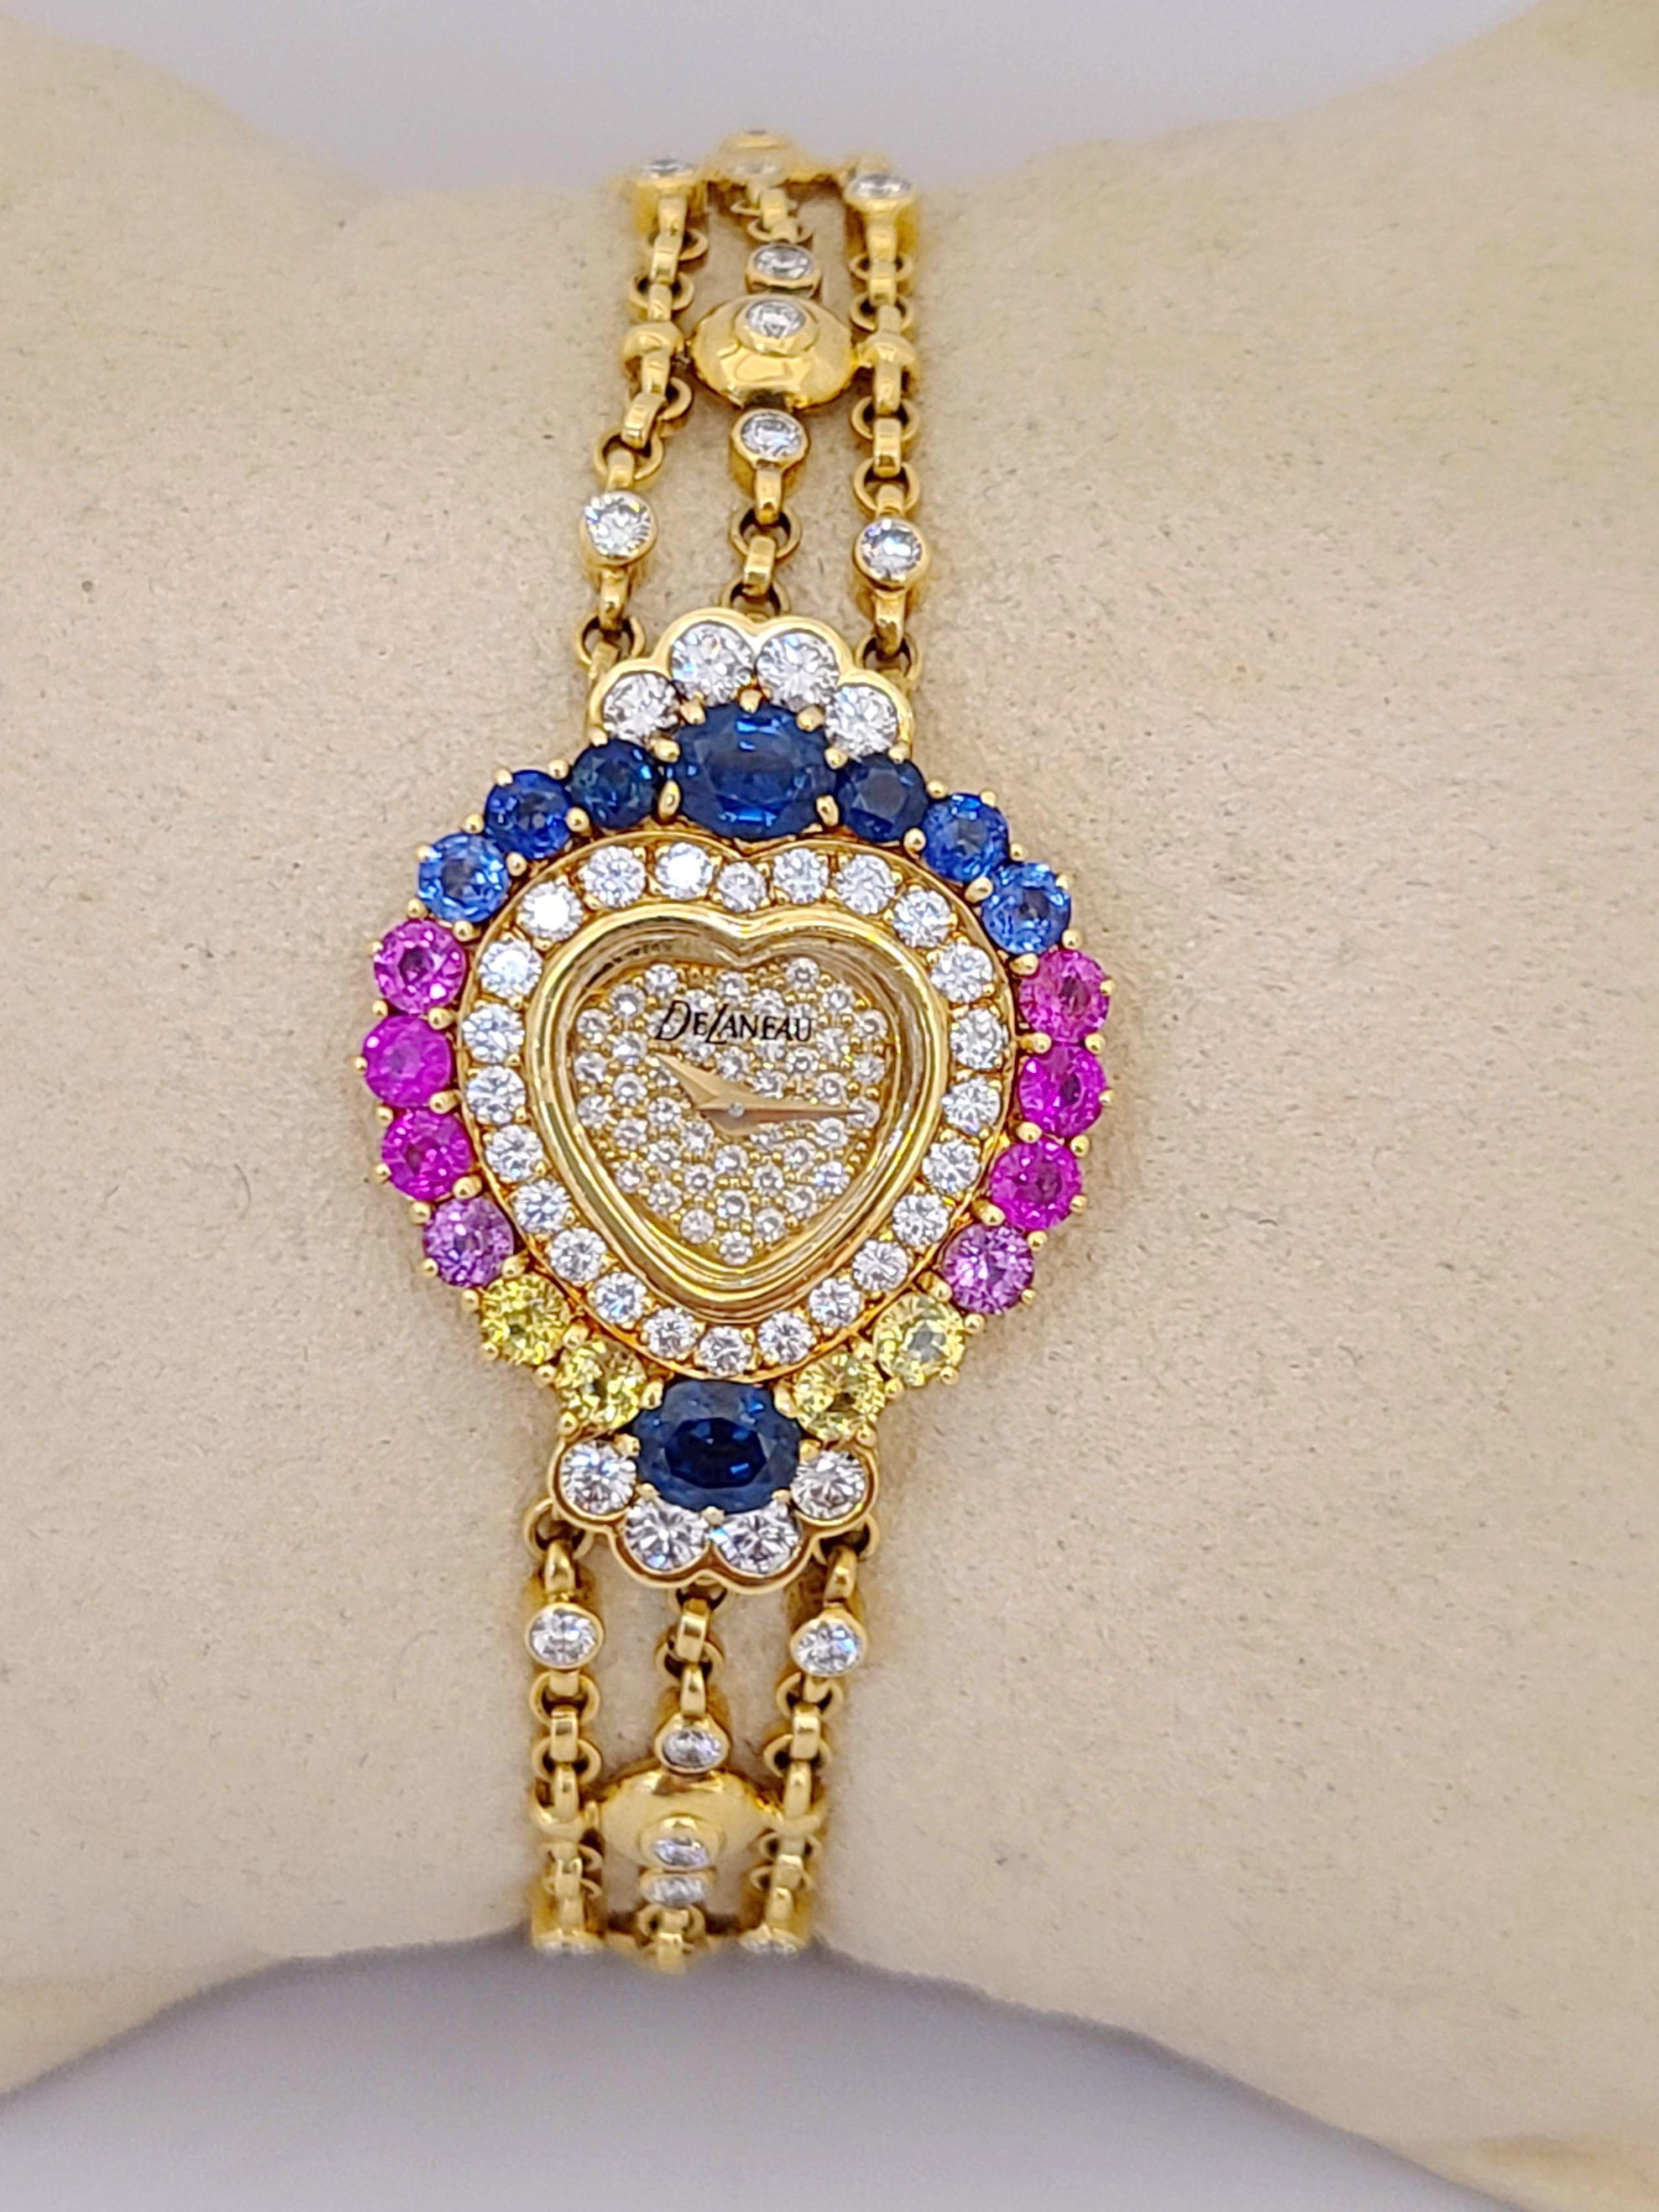 DeLaneau Herzförmige Uhr aus 18 Karat Gold mit Diamanten und mehrfarbigen Saphiren für Damen oder Herren im Angebot